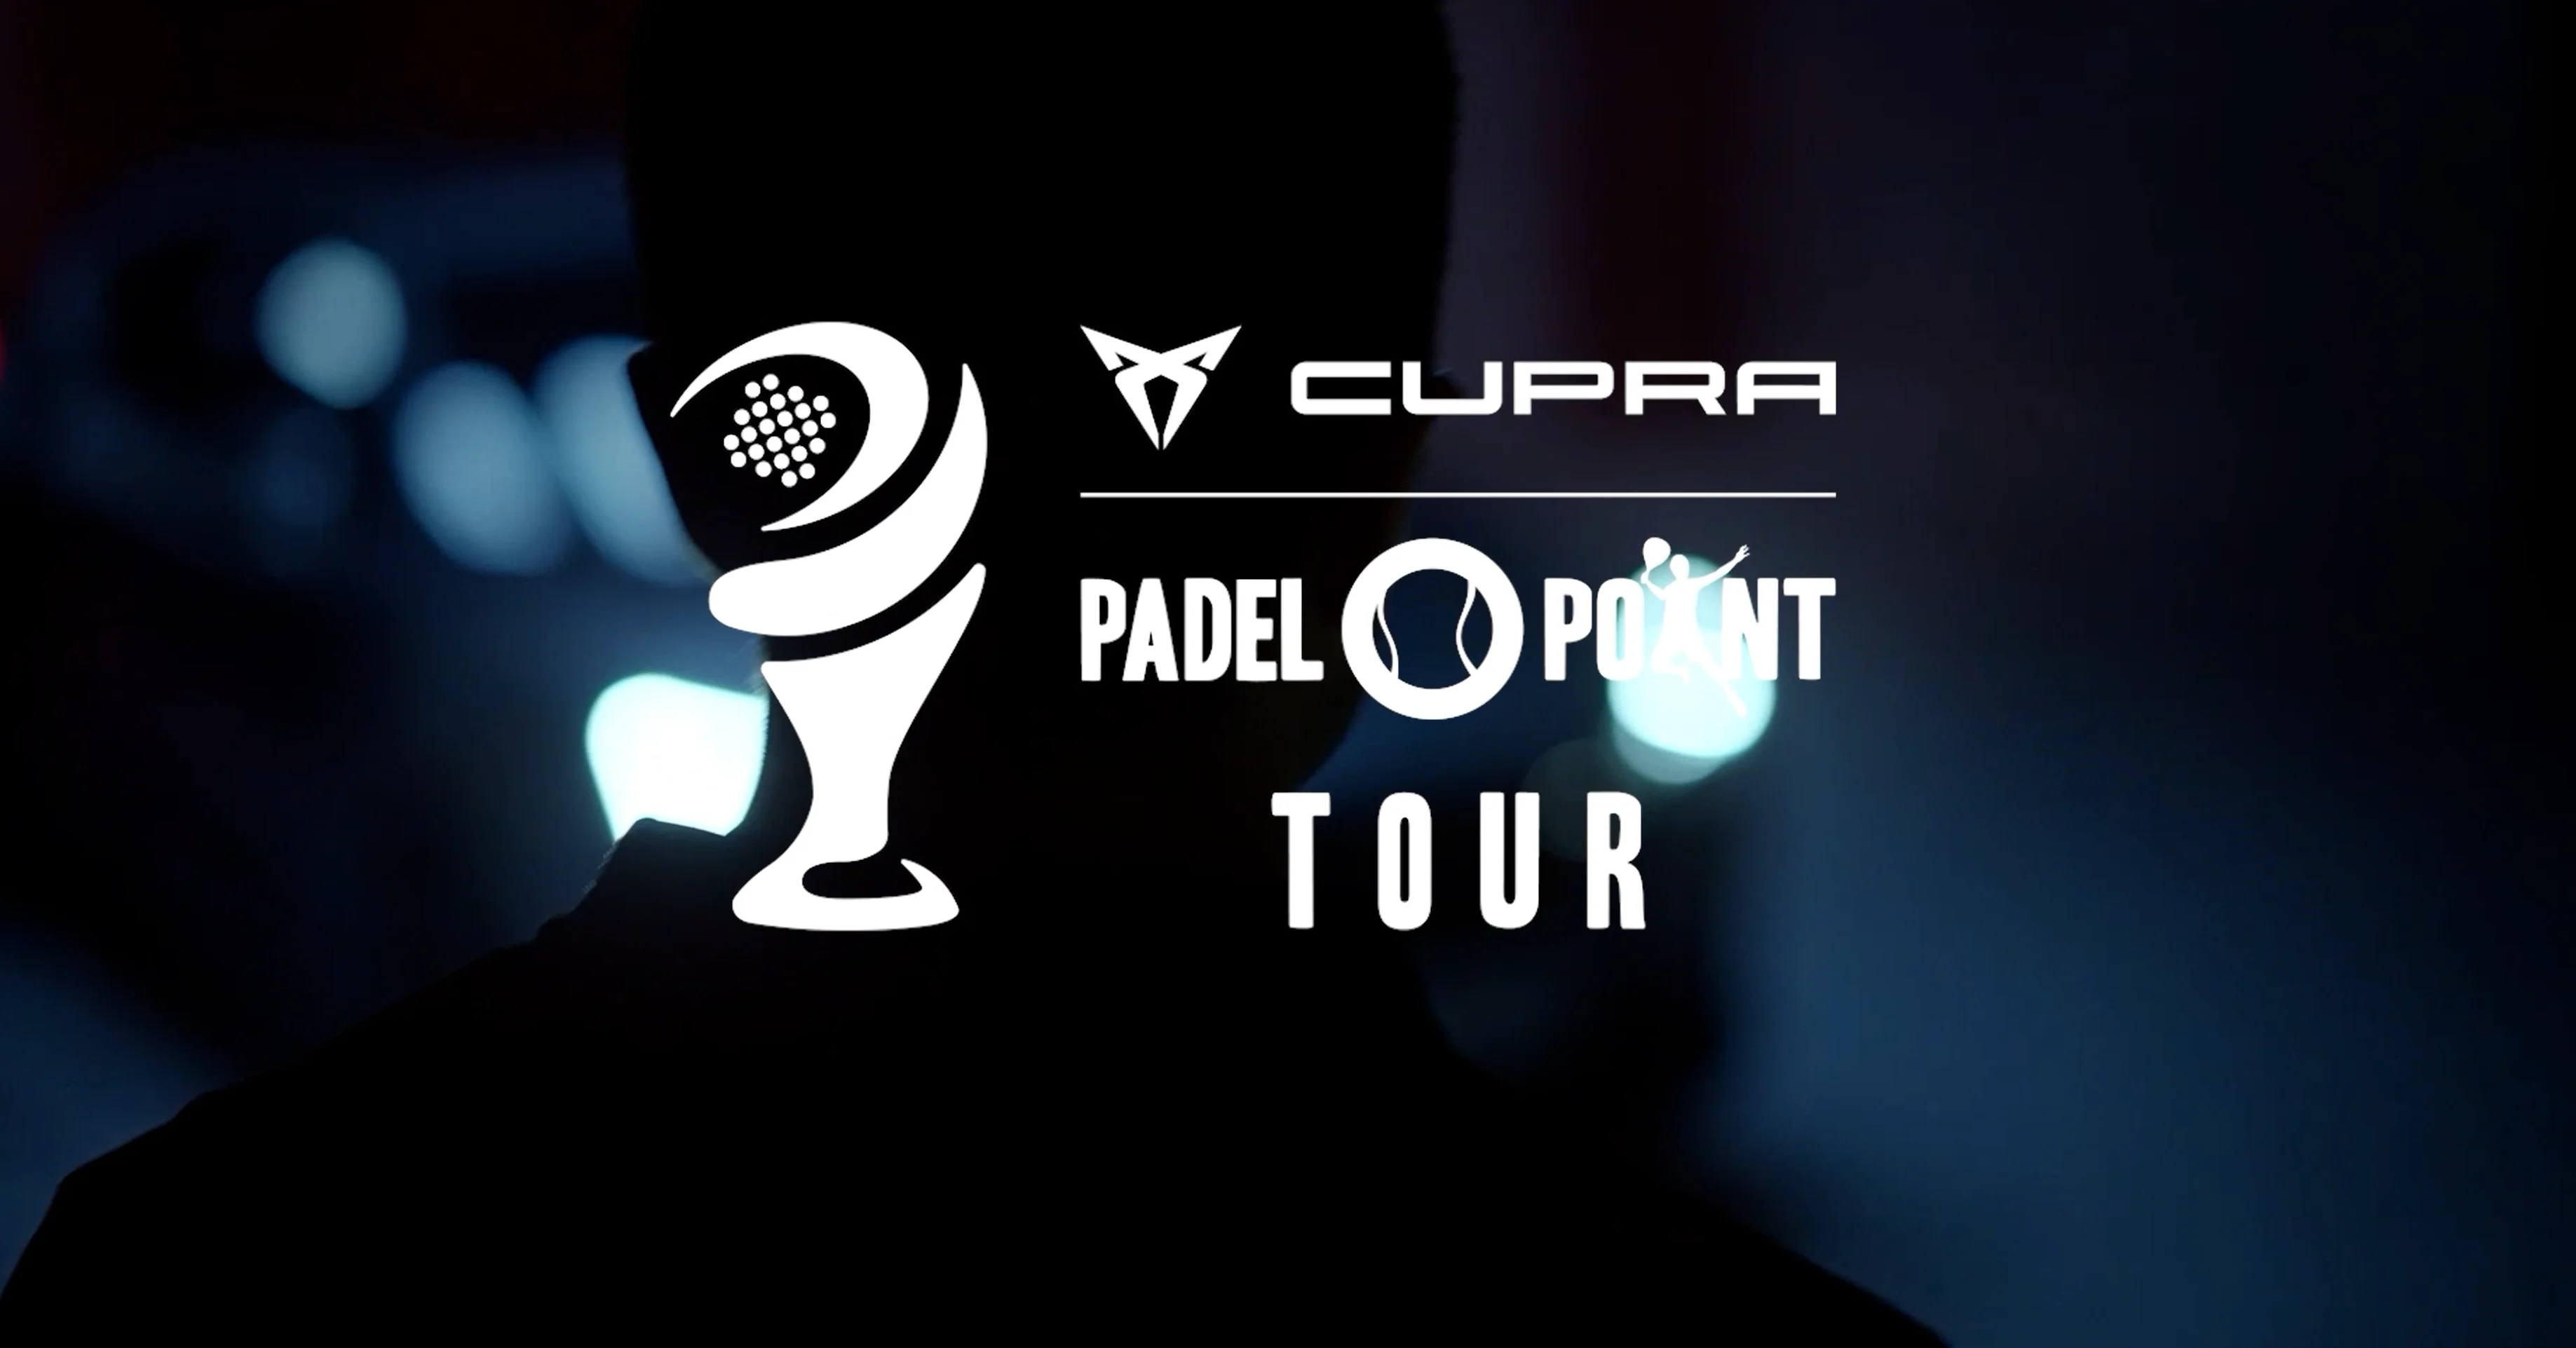 Cupra Padel-Point Tour Saint-Etienne, programmet!